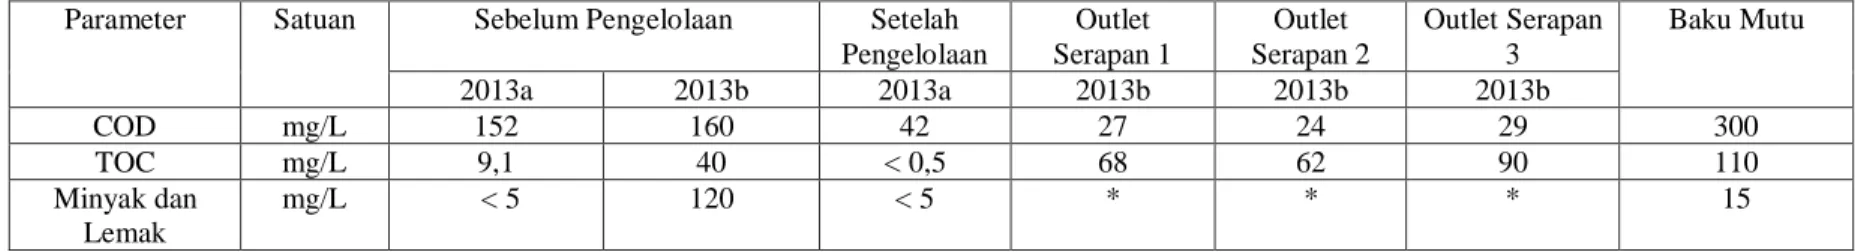 Tabel 2.20  Hasil Pengukuran Kualitas Air  Limbah Pada Saat Rona Awal   dan Hasil Pemantauan Lingkungan  di Sekitar Lokasi  PLTD Telaga  